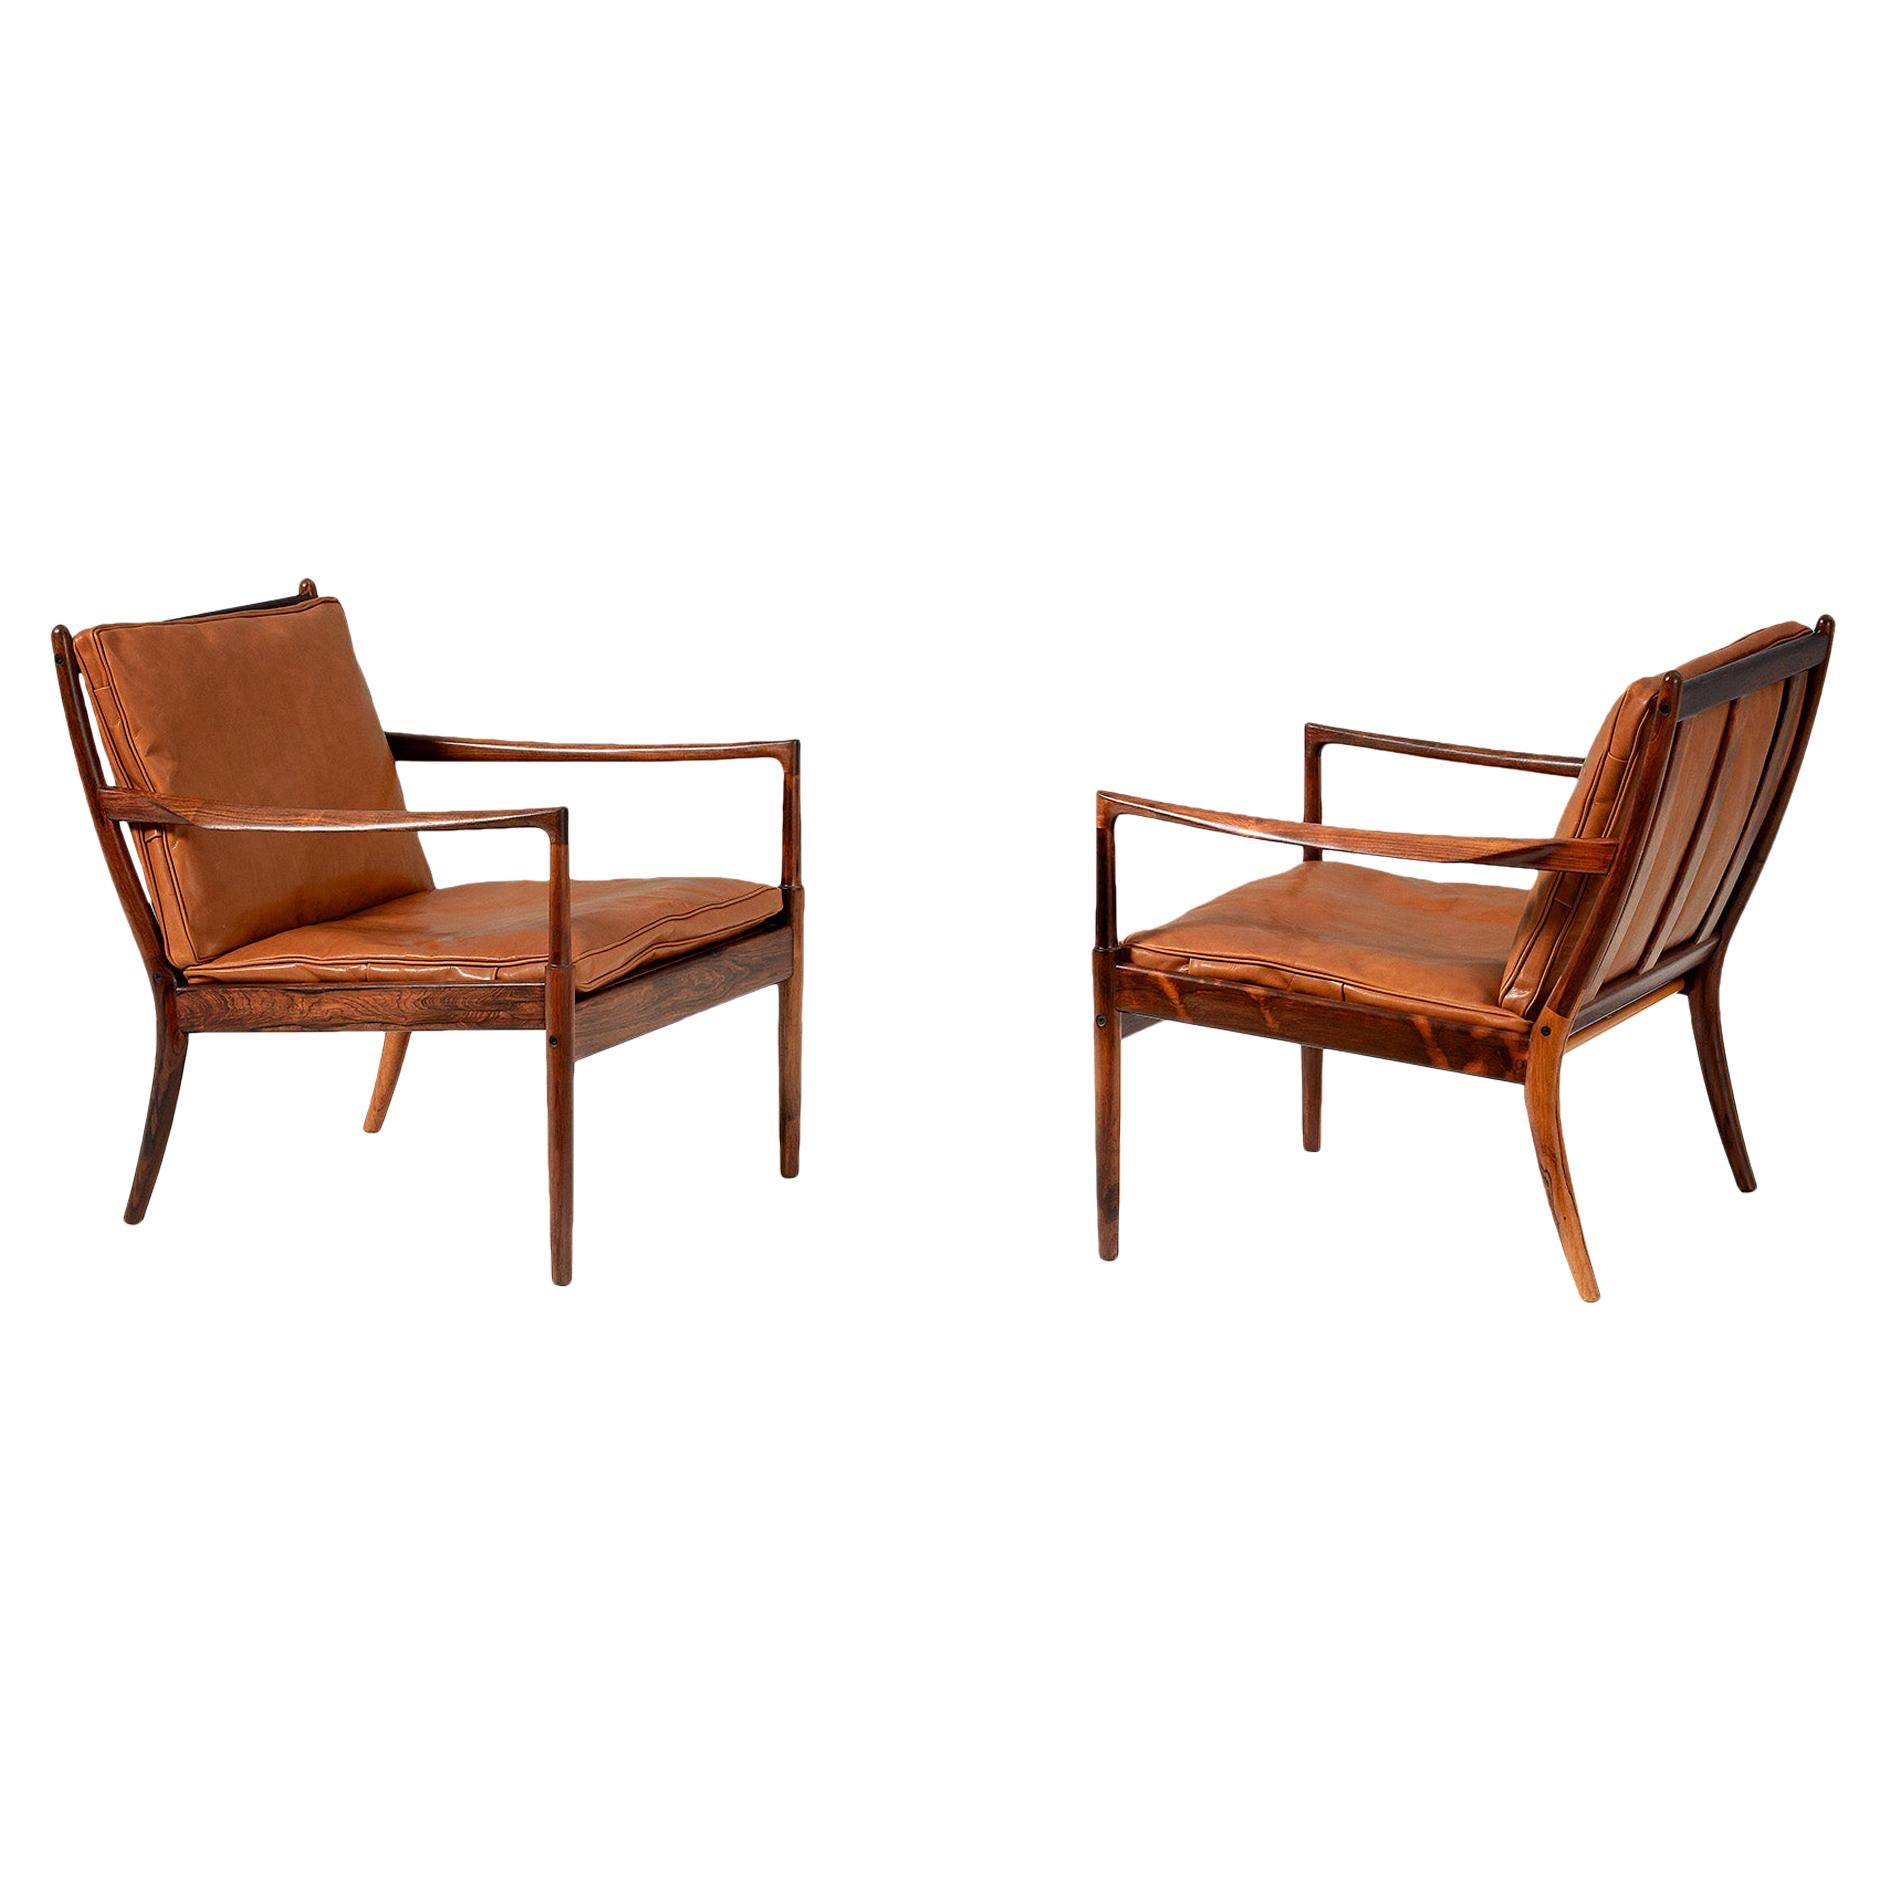 Ib Kofod-Larsen Rosewood Samso Chairs, circa 1960